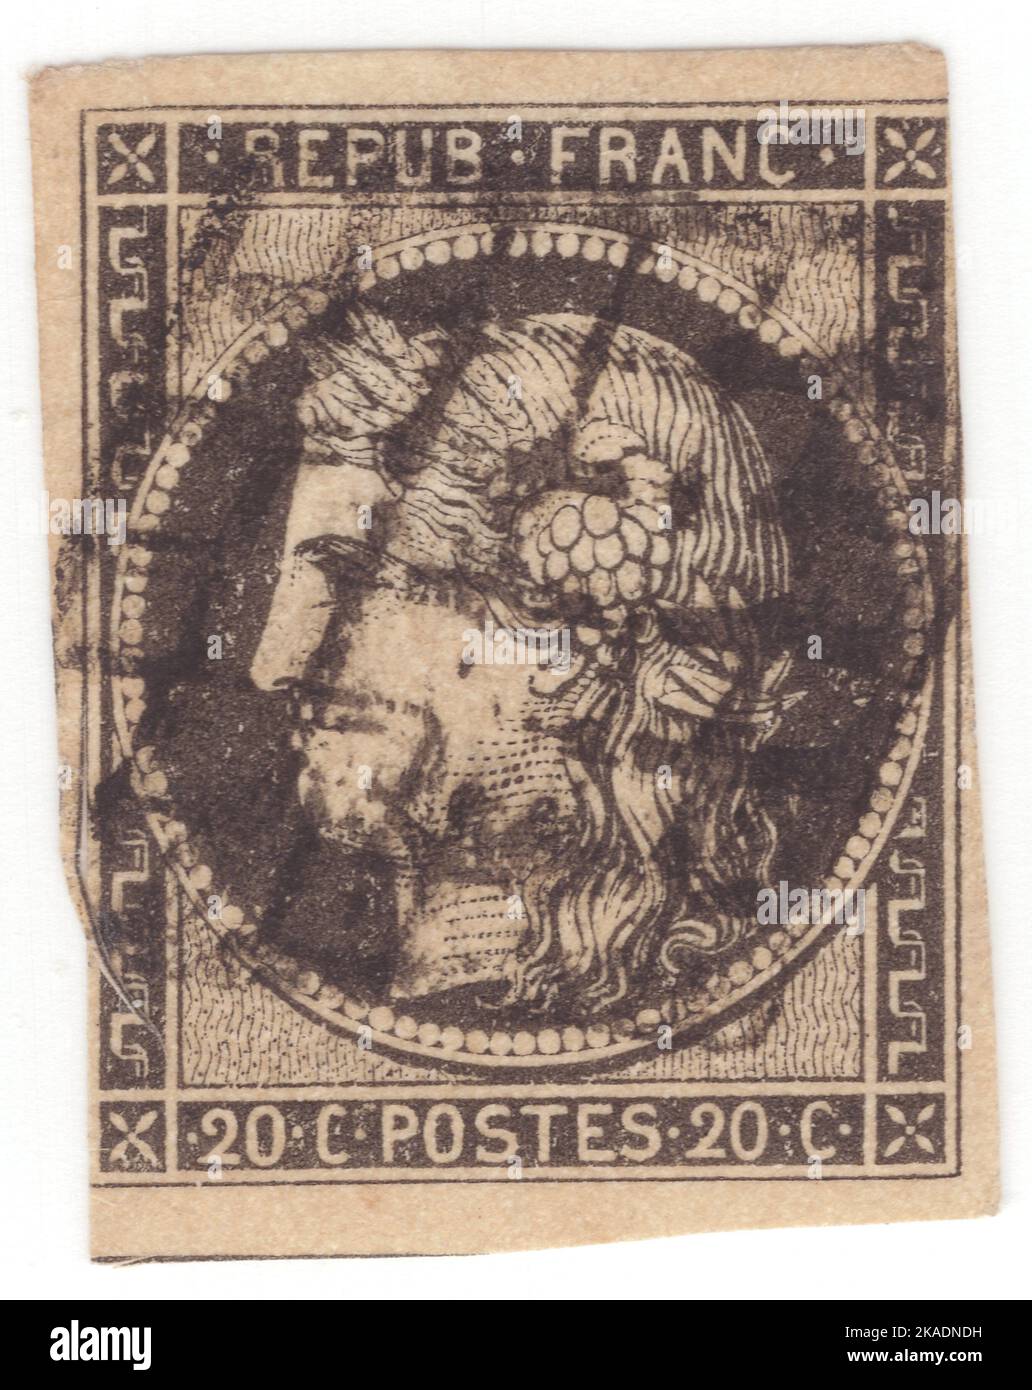 FRANCIA - 1849: Un francobollo da 20 centesimi nero su giallastro raffigurante Ceres — Dea dell'agricoltura, della fertilità, dei cereali, del raccolto, della maternità, la terra, e coltivò raccolti Foto Stock